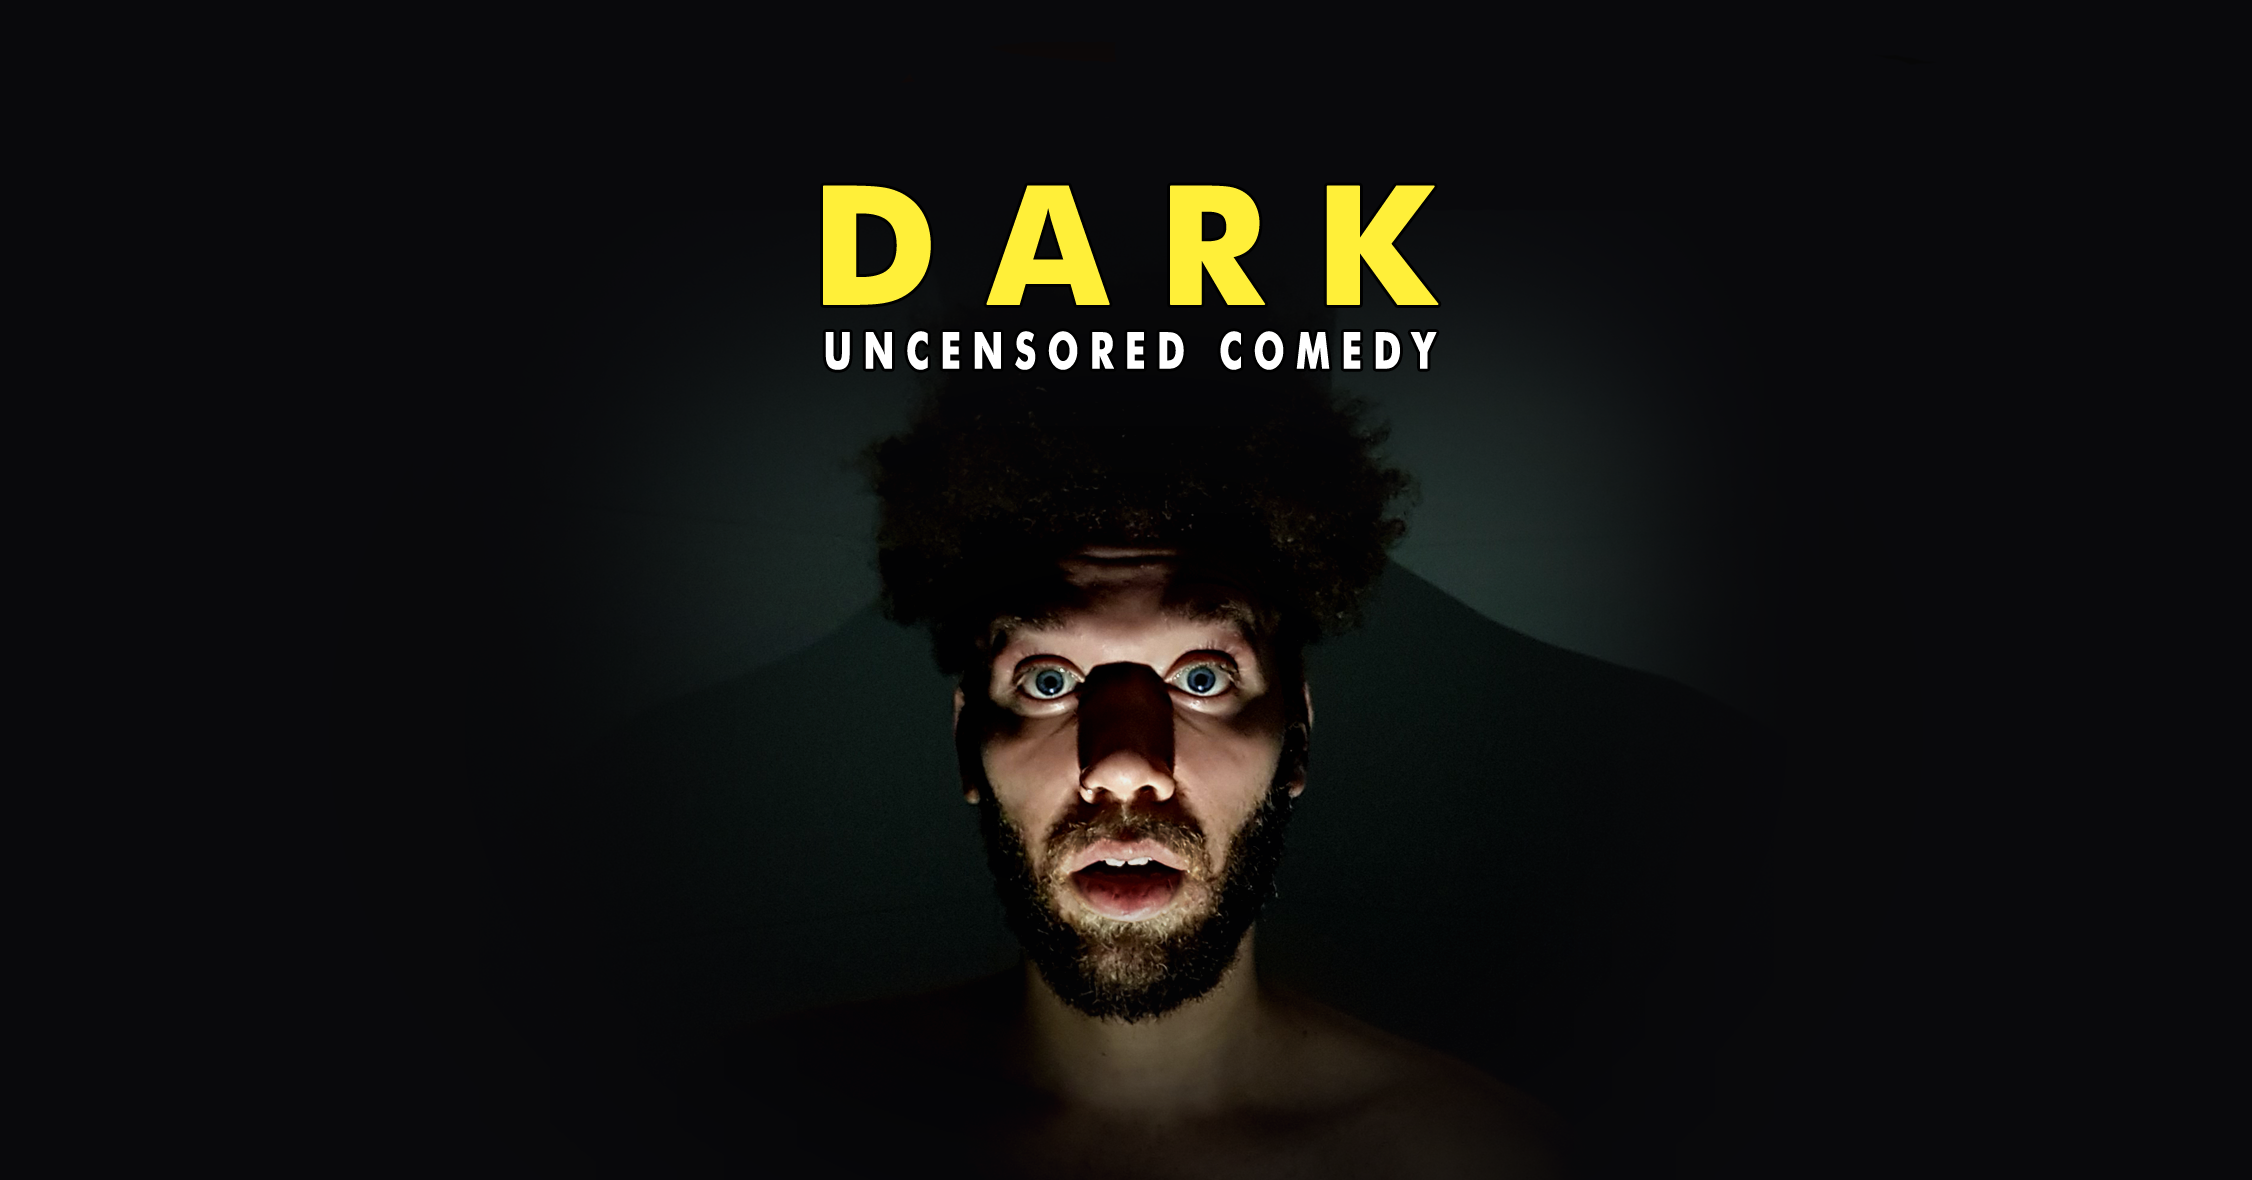 "DARK" Delightfully Dark Comedy